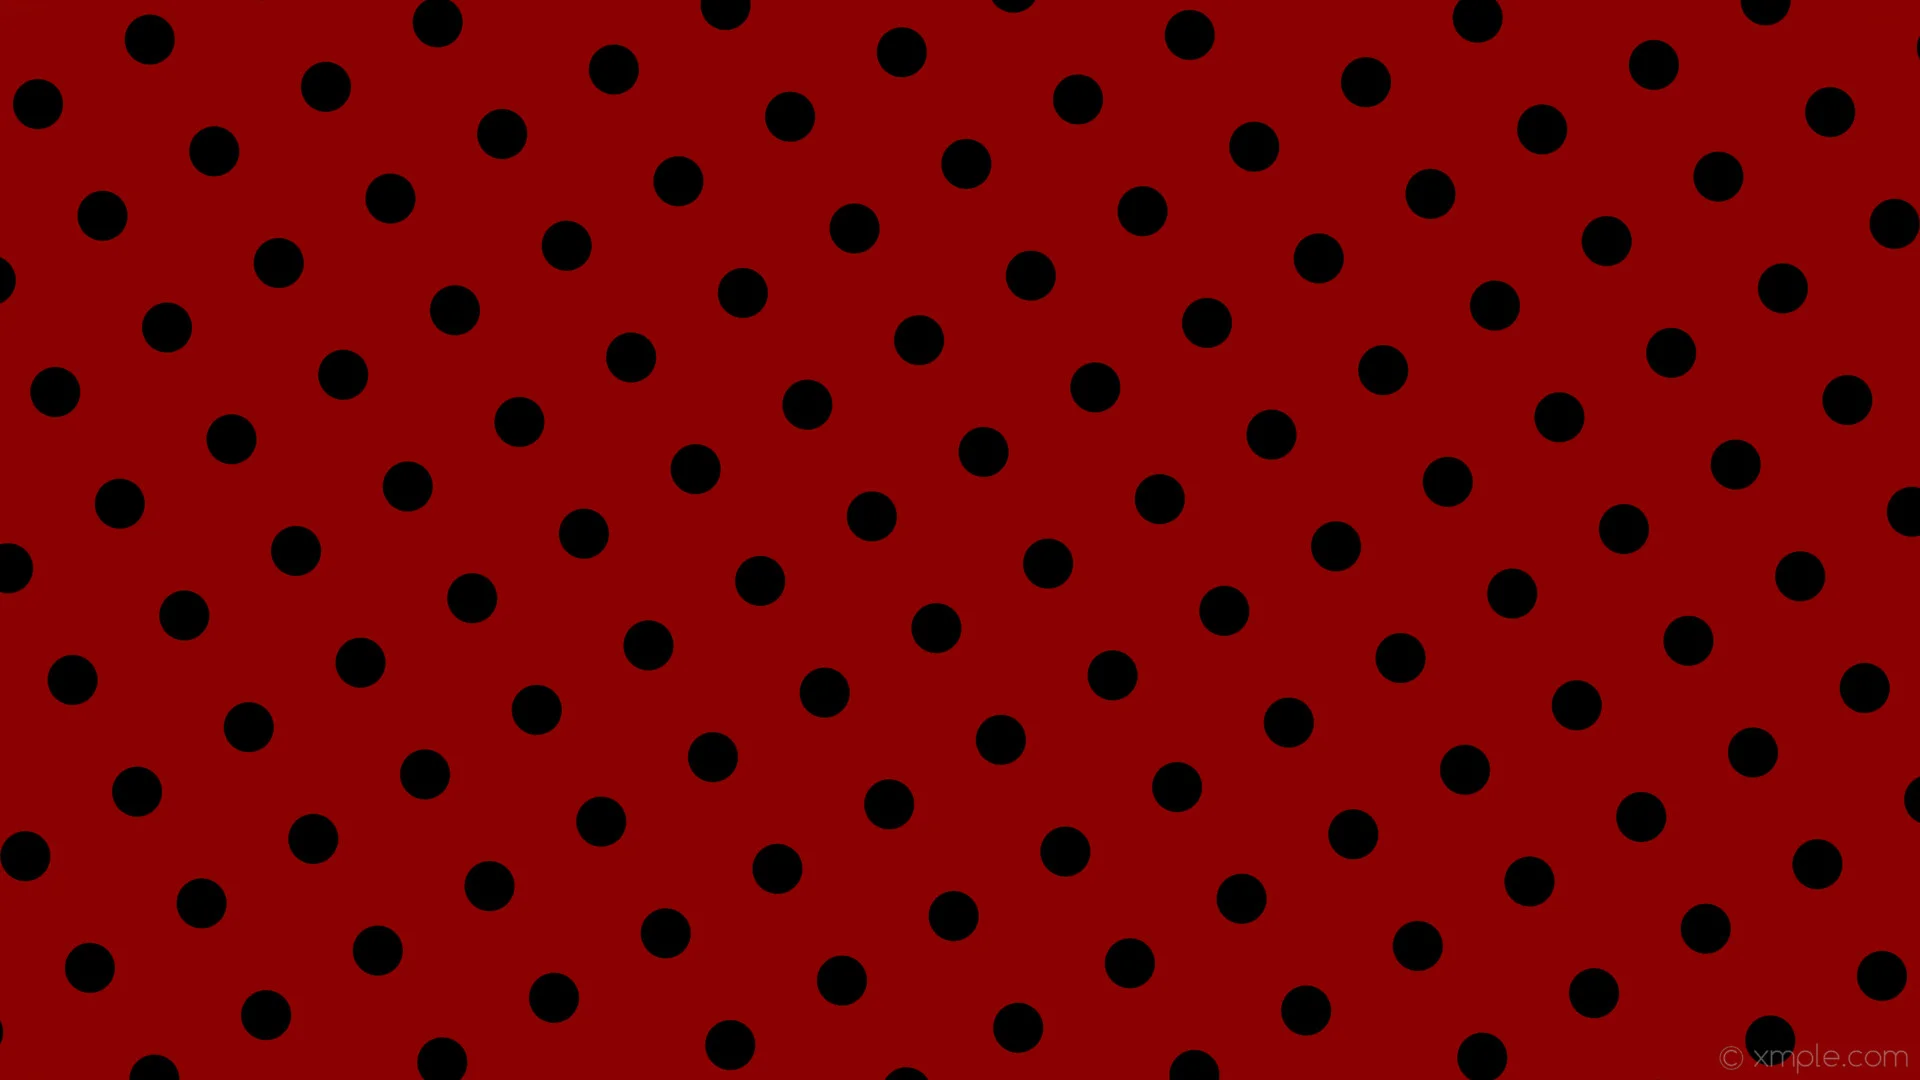 wallpaper red polka dots black spots dark red #8b0000 #000000 210Â° 50px  129px